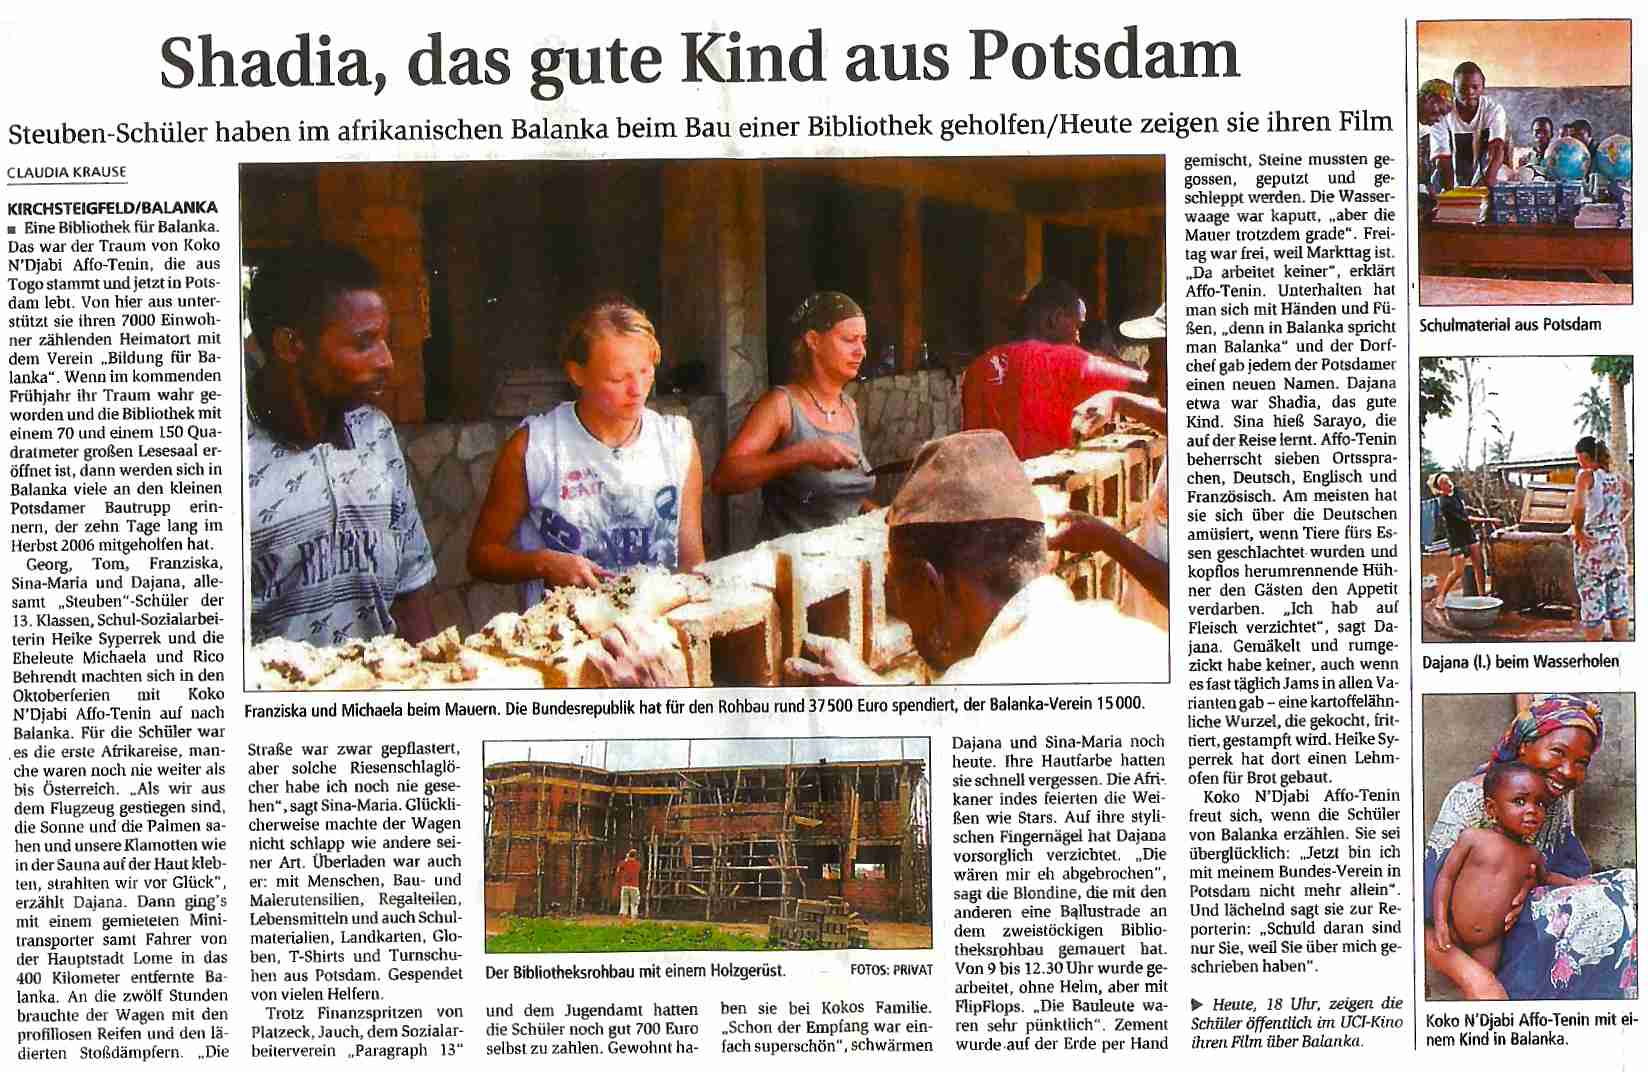 Märkische Allgemeine Zeitung: Shadia, das gute Kind aus Potsdam